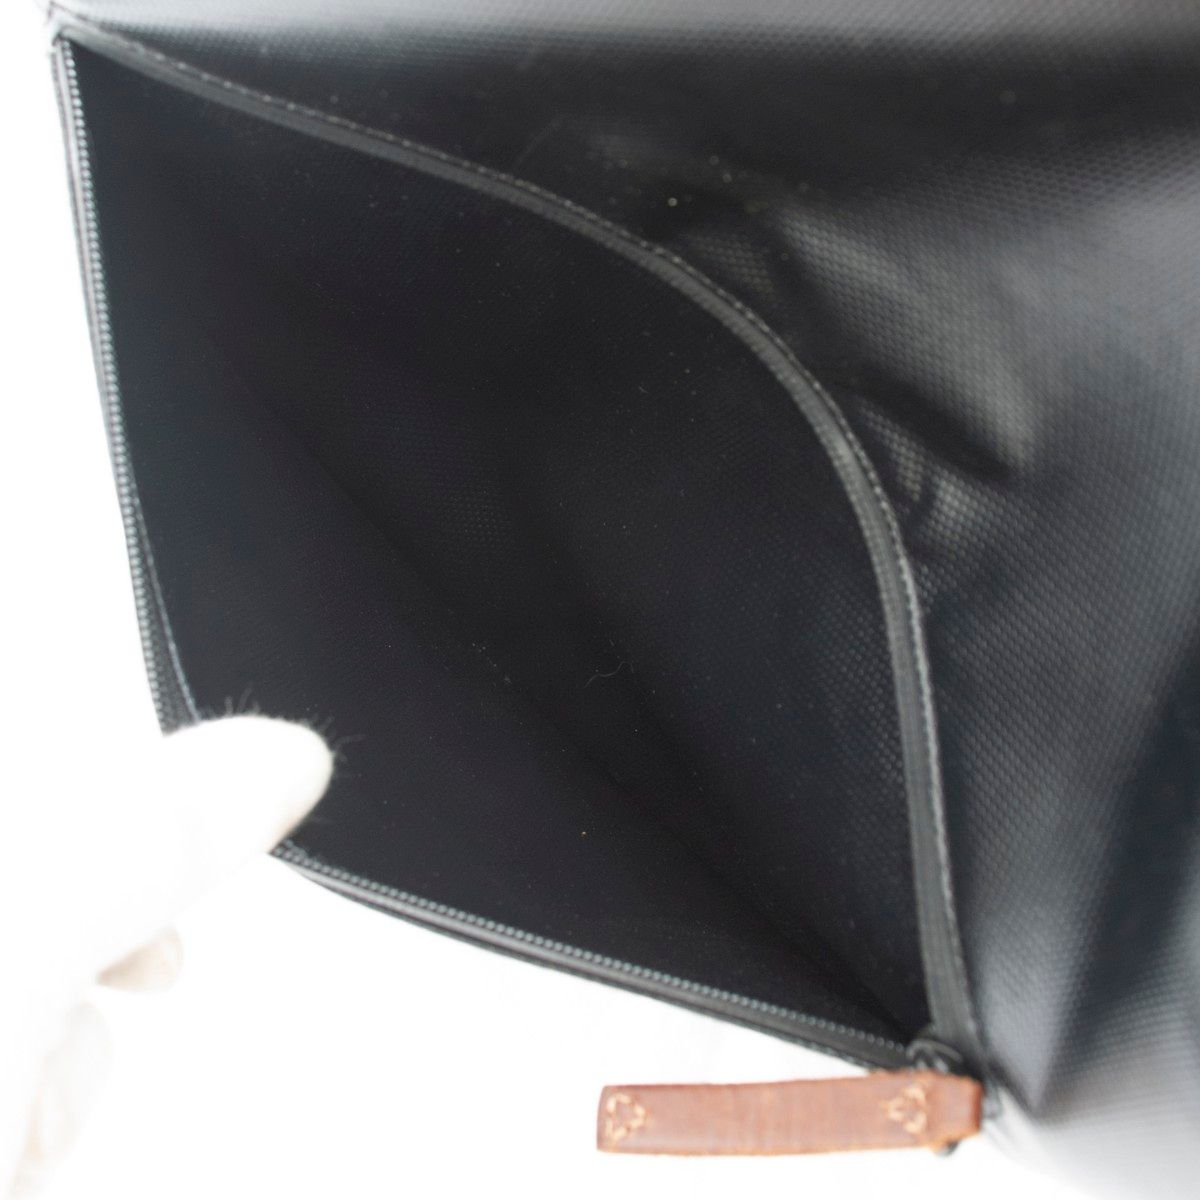 【美品】DIESEL(ディーゼル)PVC レザー トートバッグ ブラック 黒 メンズ 中古  used 大容量 ブランド